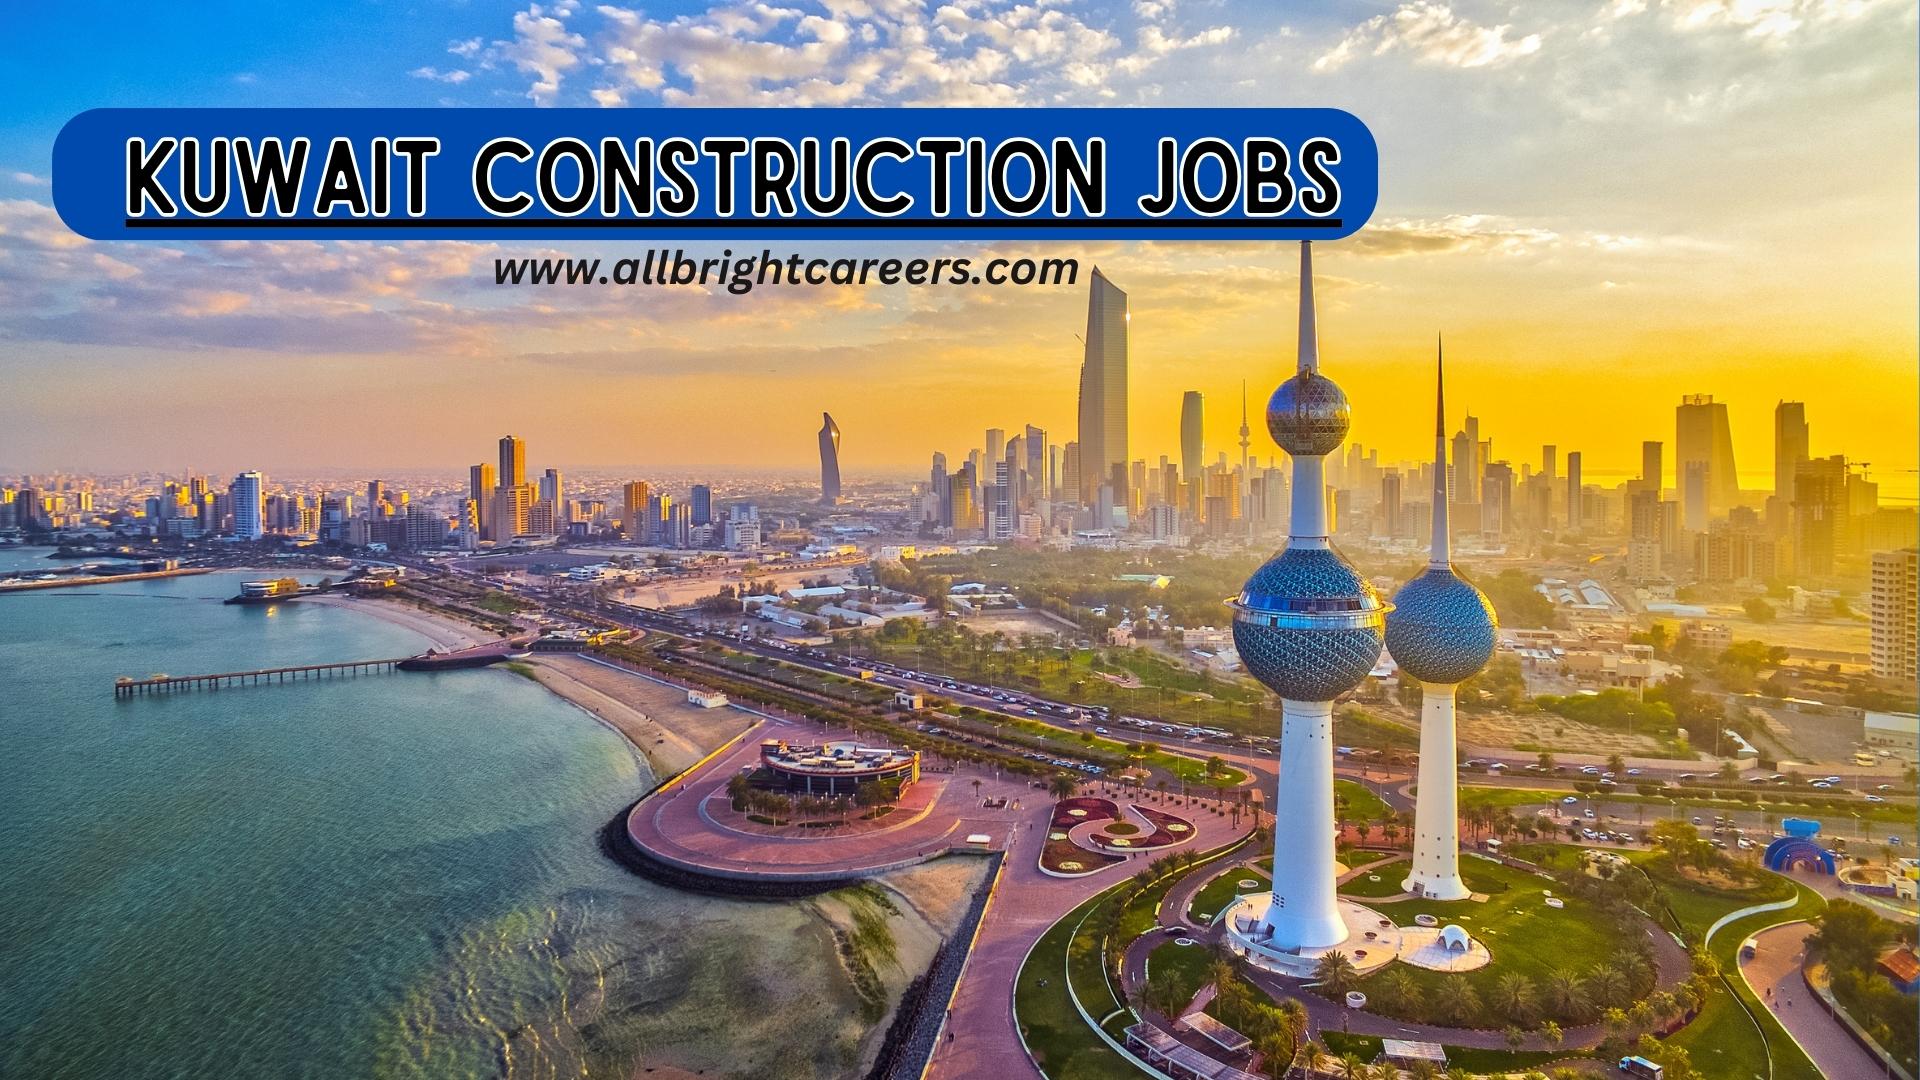 Kuwait Construction jobs